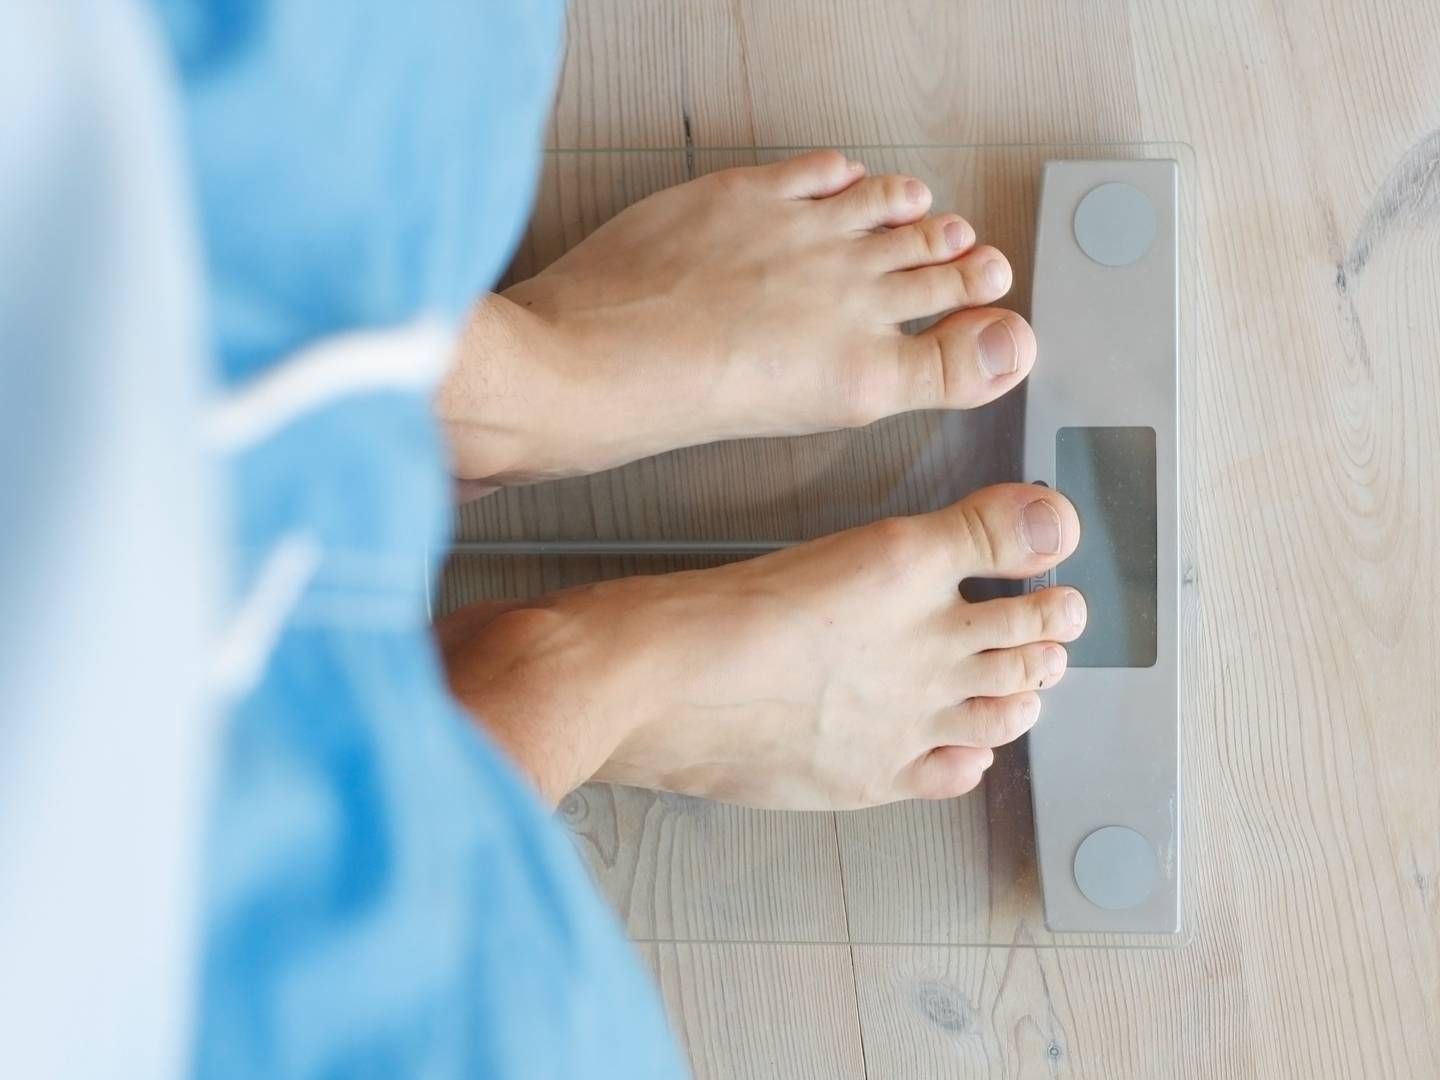 RETNINGSLINJER: Helsemyndigheten NICE i Storbritannia har nå utgitt retningslinjer for bruken av fedmebehandlingen Wegovy, som markedsføres av Novo Nordisk. | Foto: Colourbox